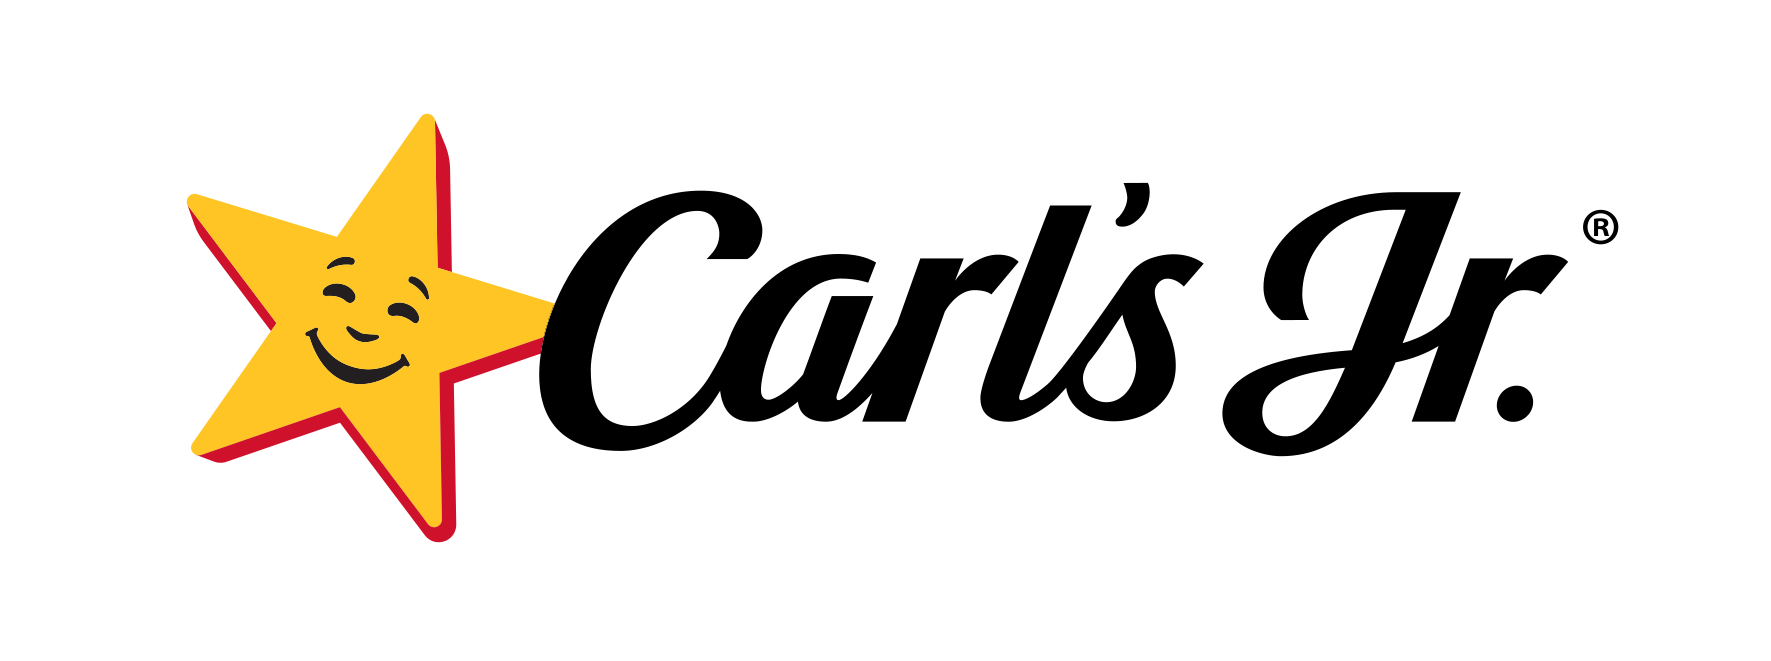 Carls_logo_(1).png